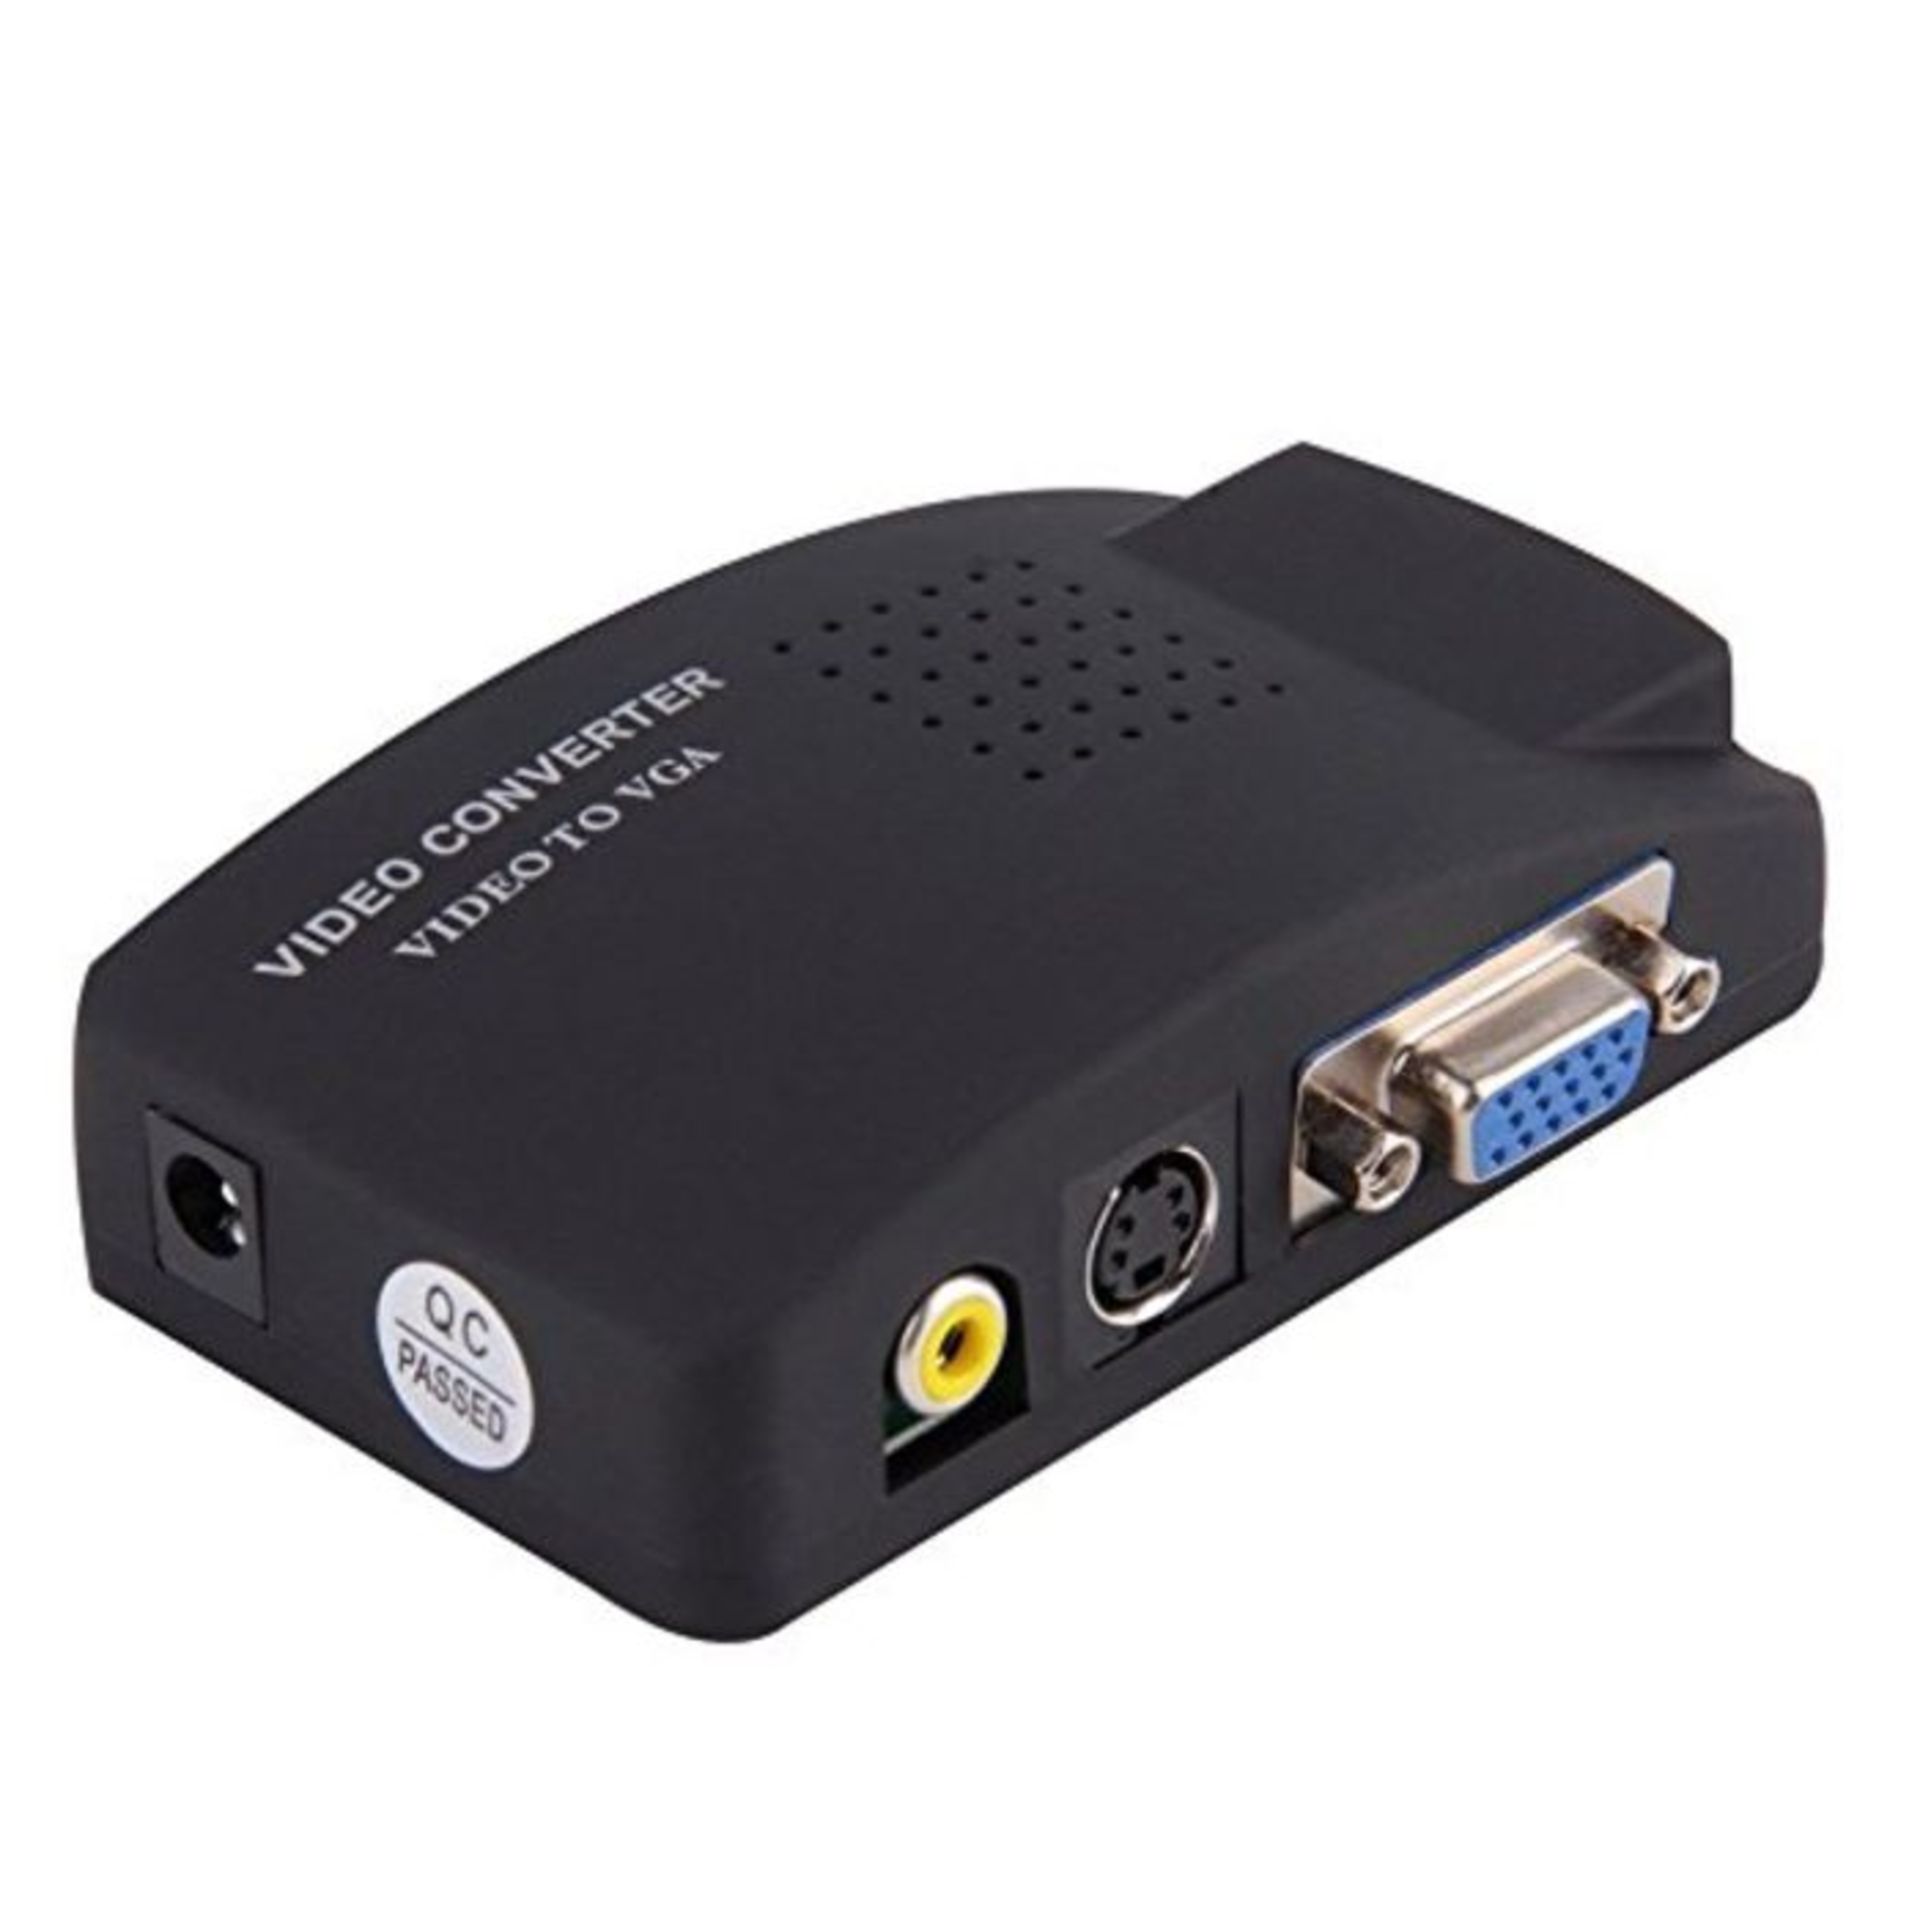 Convertitore adattatore video da AV, rca, s-video a VGA monitor pc proiettori